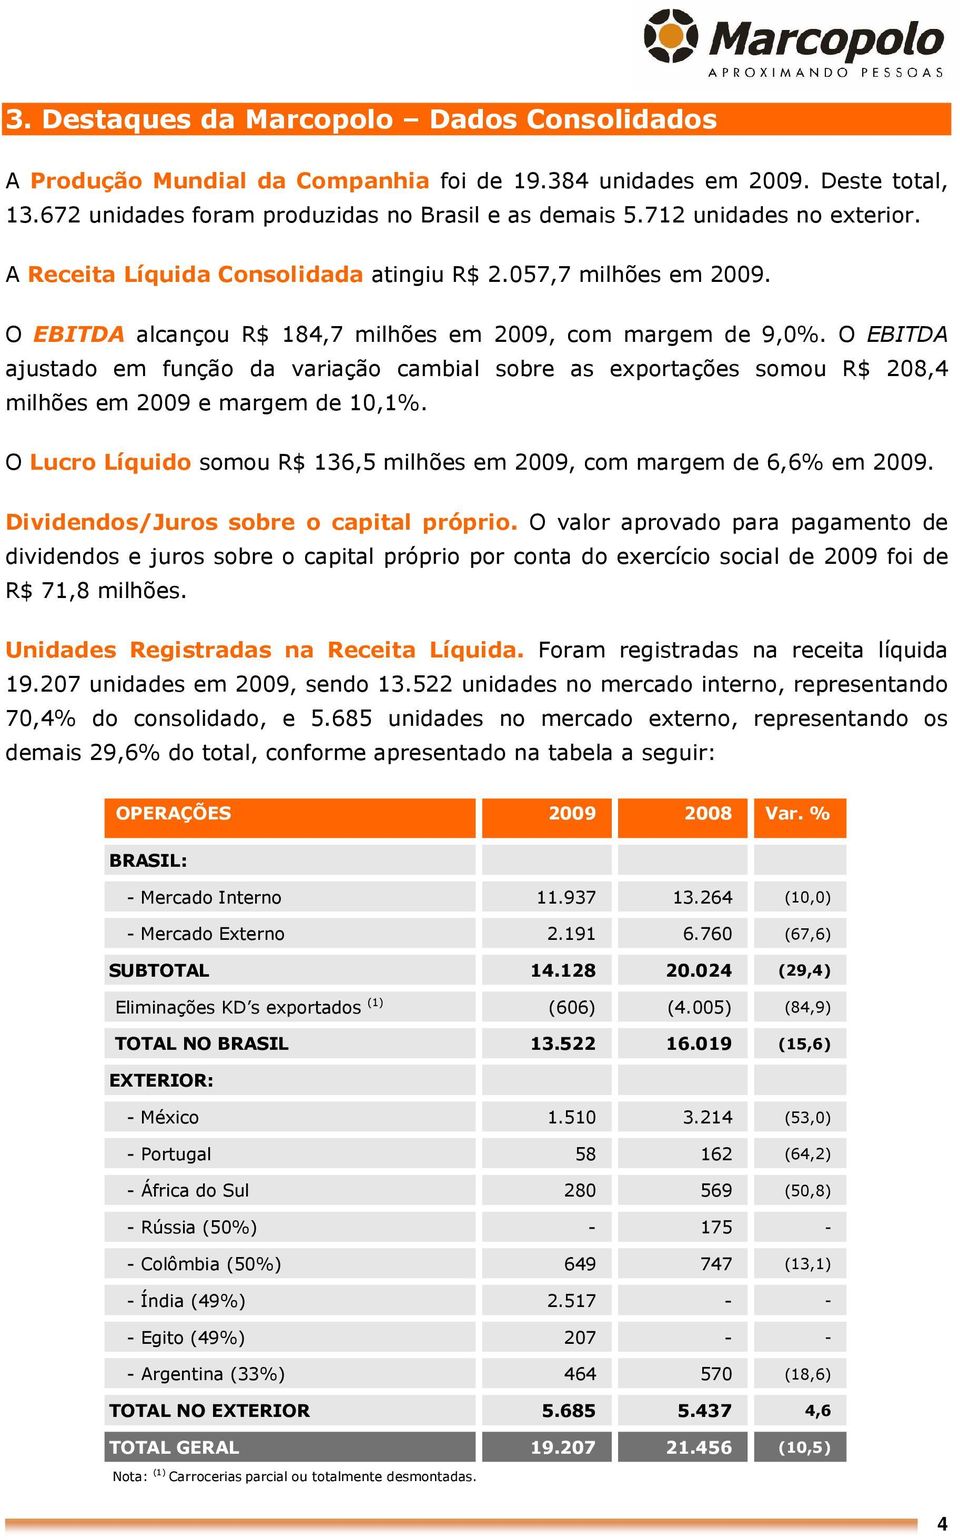 O EBITDA ajustado em função da variação cambial sobre as exportações somou R$ 208,4 milhões em 2009 e margem de 10,1%. O Lucro Líquido somou R$ 136,5 milhões em 2009, com margem de 6,6% em 2009.